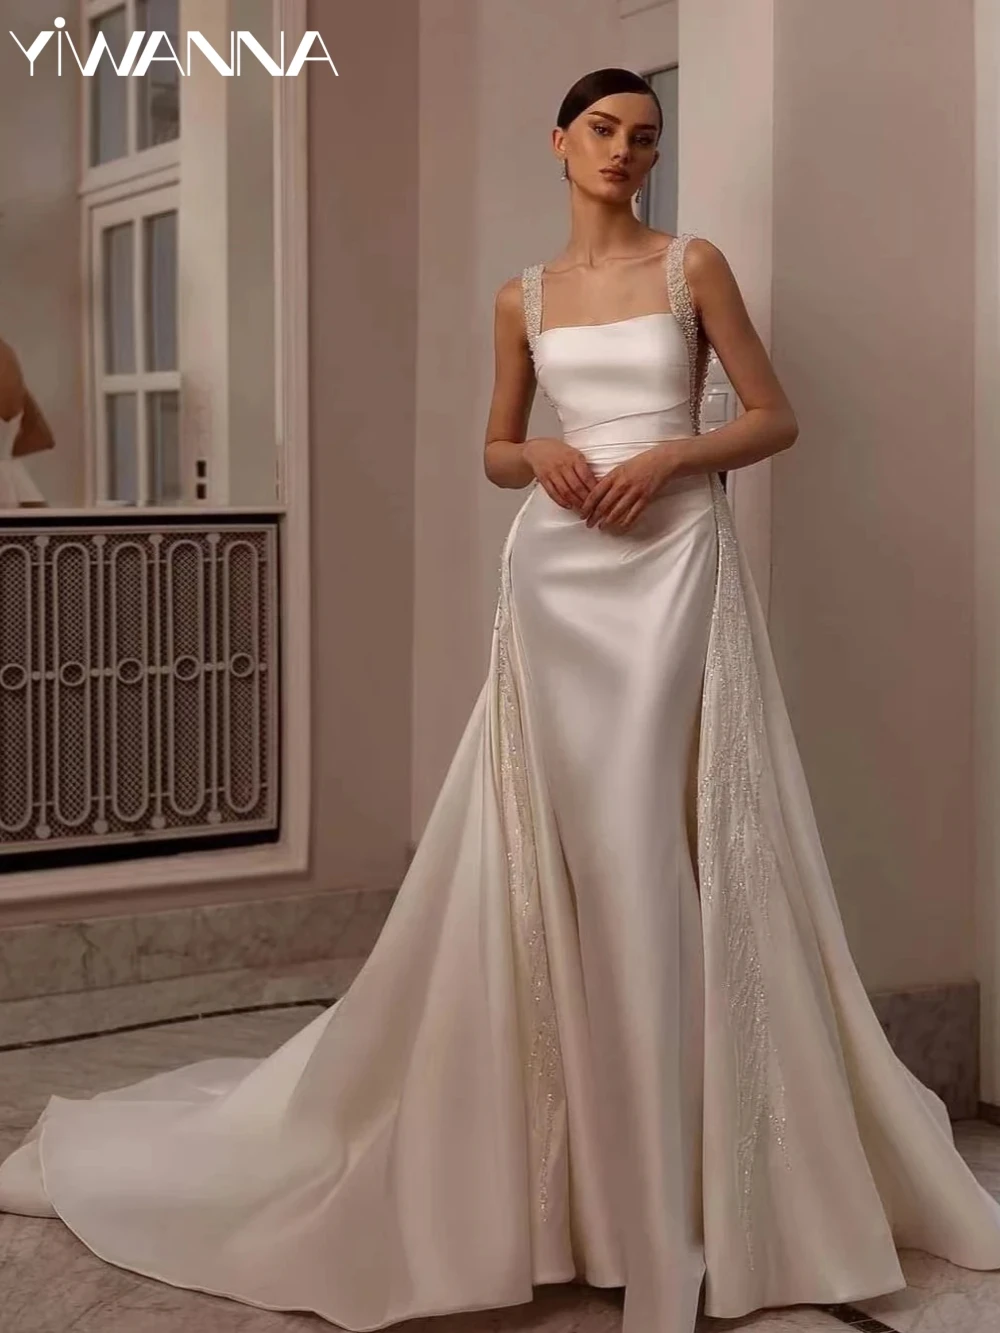 

Скромное свадебное платье с квадратным вырезом, блестящее свадебное платье с жемчугом и блестками, элегантное женское свадебное платье, платье для невесты